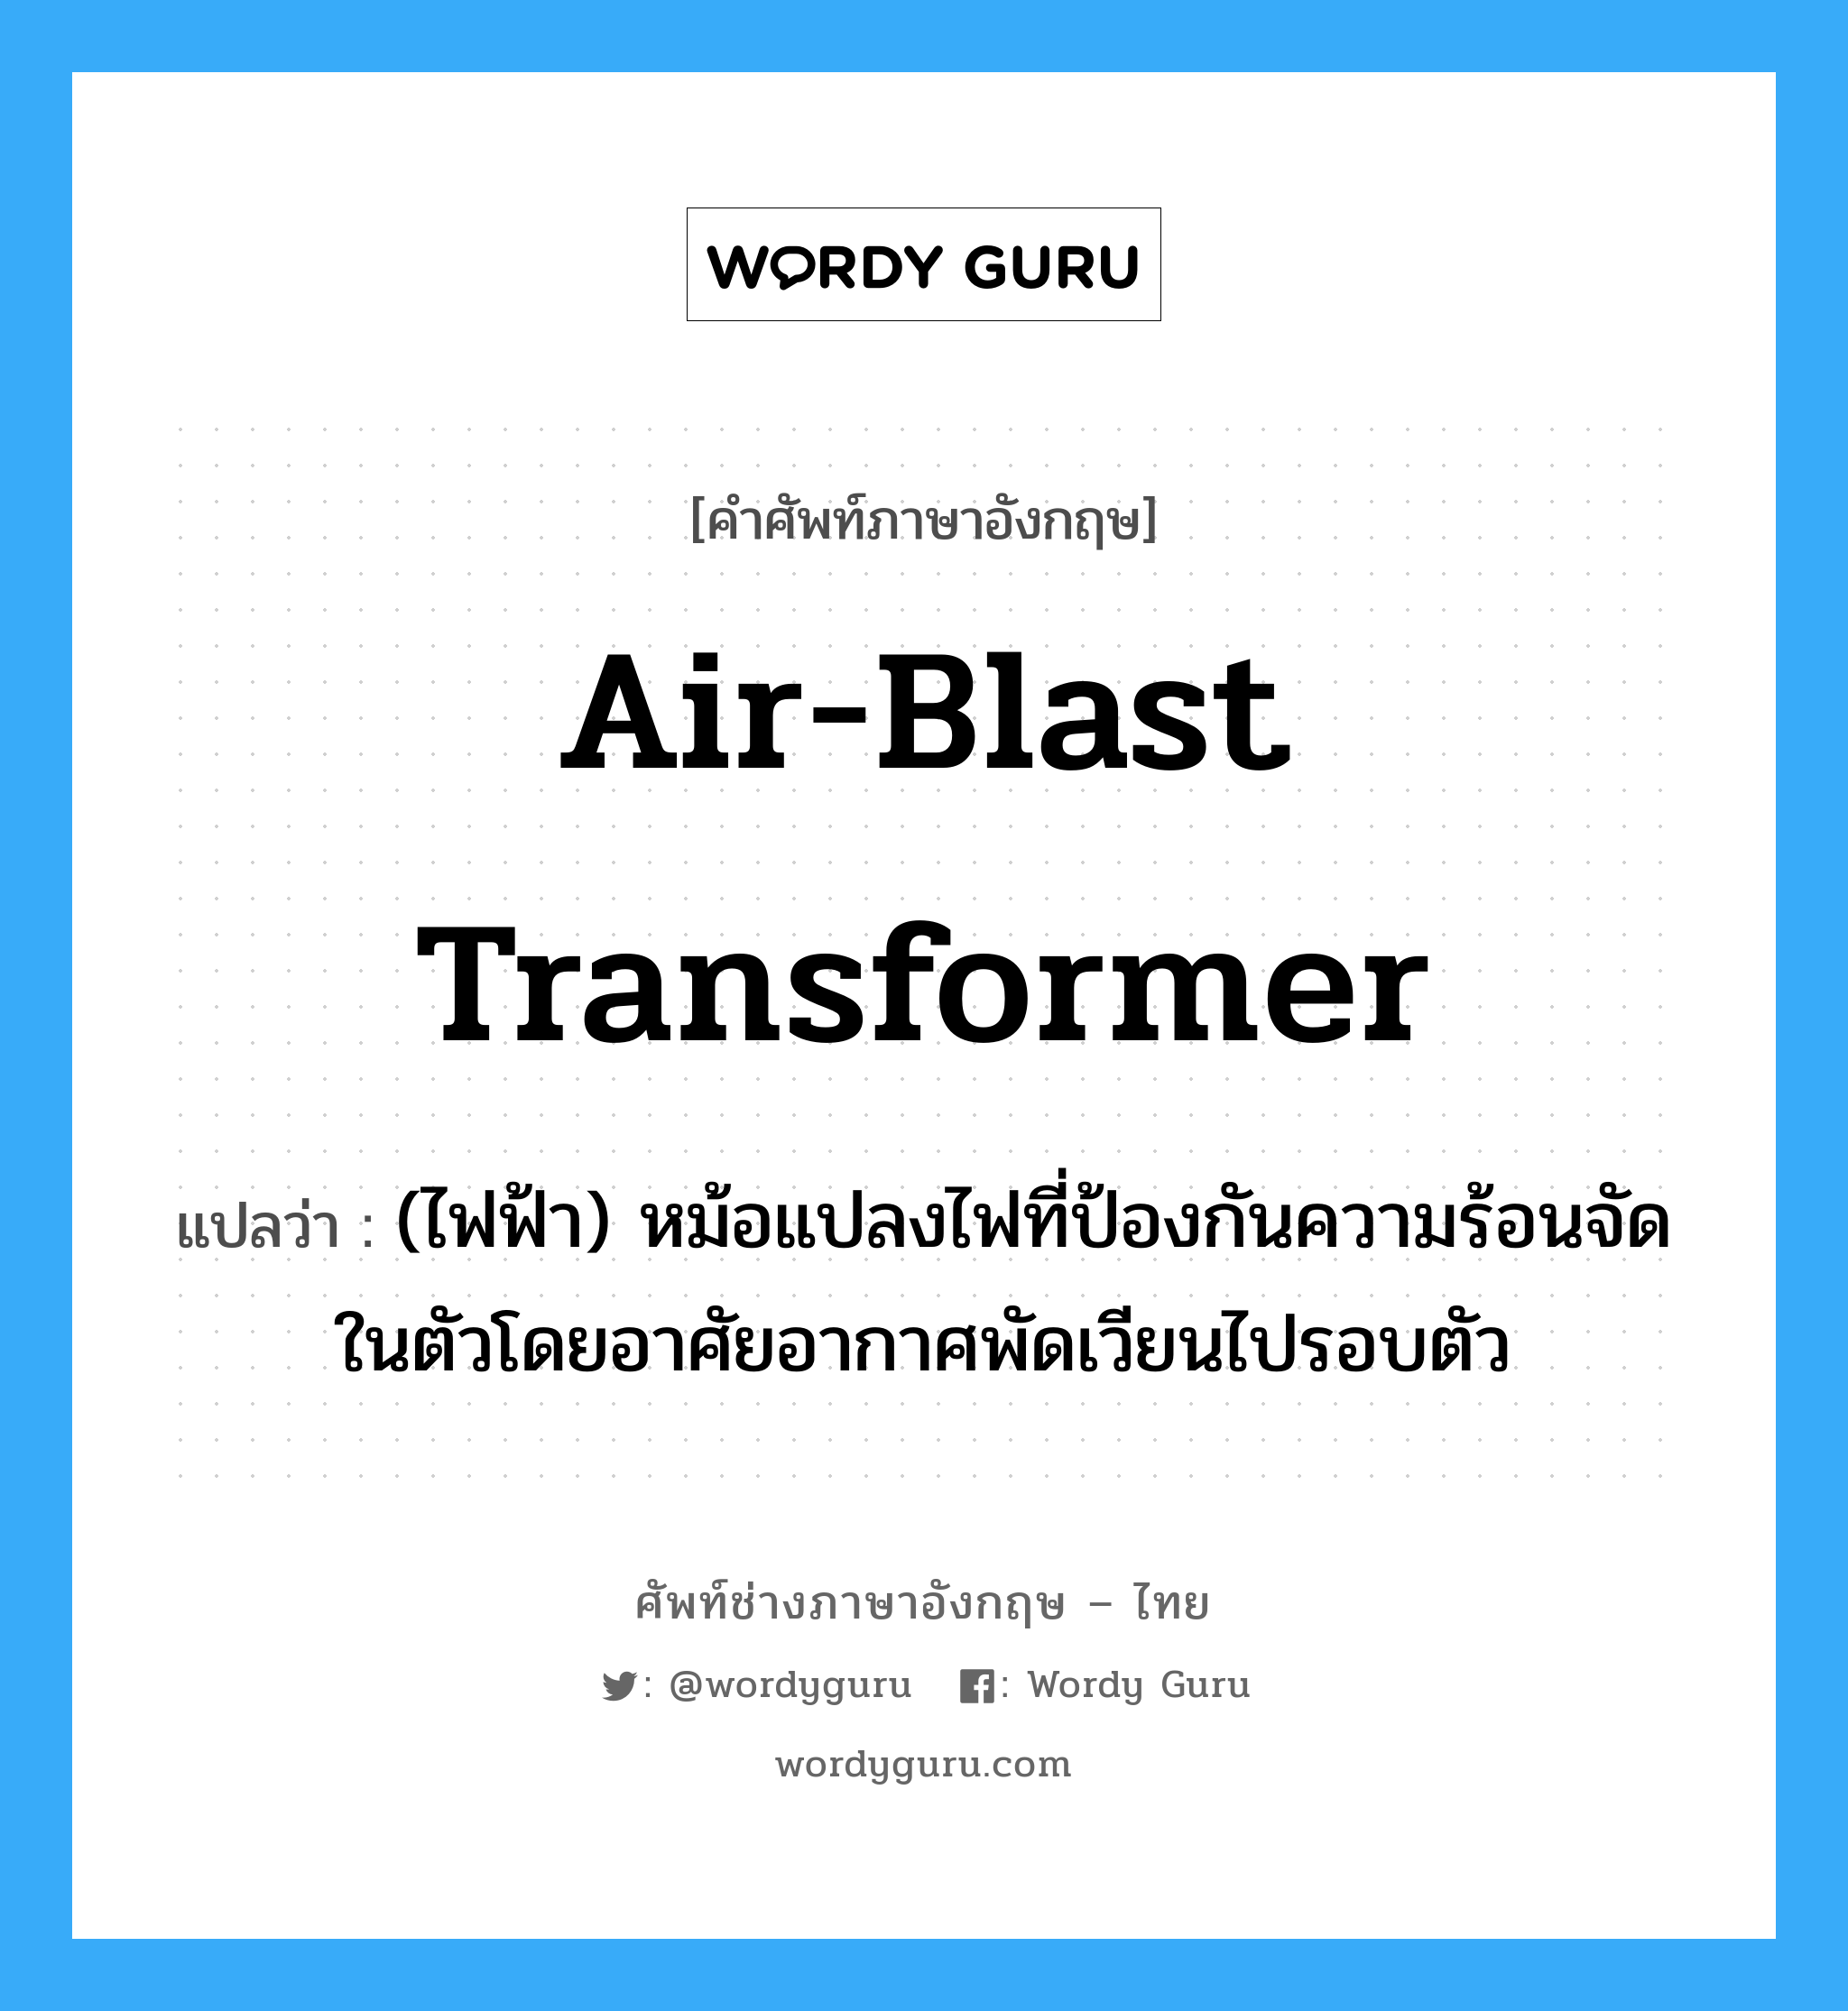 air-blast transformer แปลว่า?, คำศัพท์ช่างภาษาอังกฤษ - ไทย air-blast transformer คำศัพท์ภาษาอังกฤษ air-blast transformer แปลว่า (ไฟฟ้า) หม้อแปลงไฟที่ป้องกันความร้อนจัดในตัวโดยอาศัยอากาศพัดเวียนไปรอบตัว